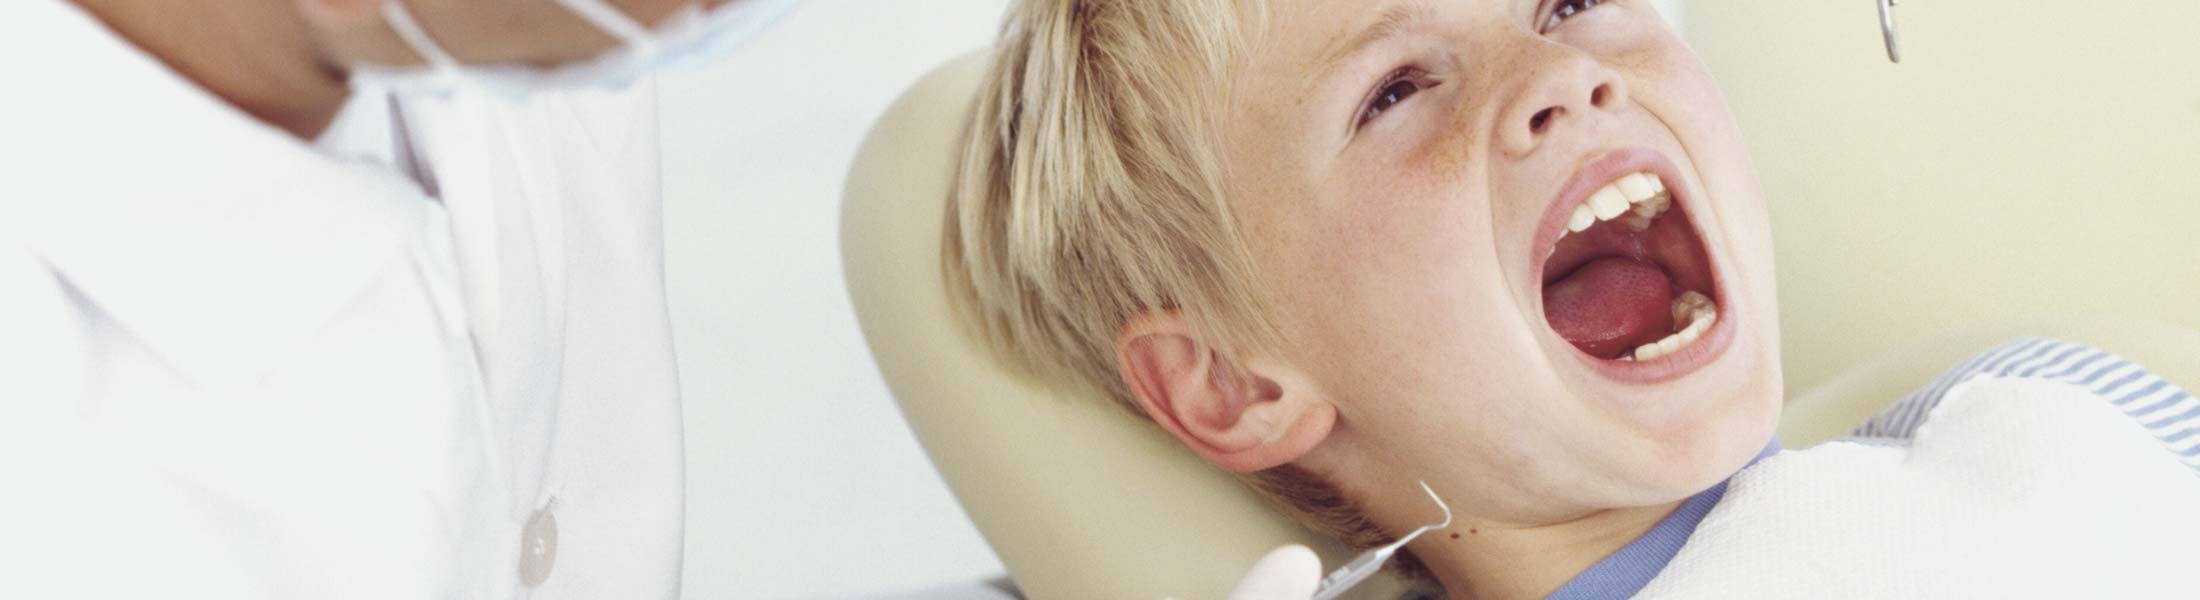 Zahnprophylaxe bei Kinden